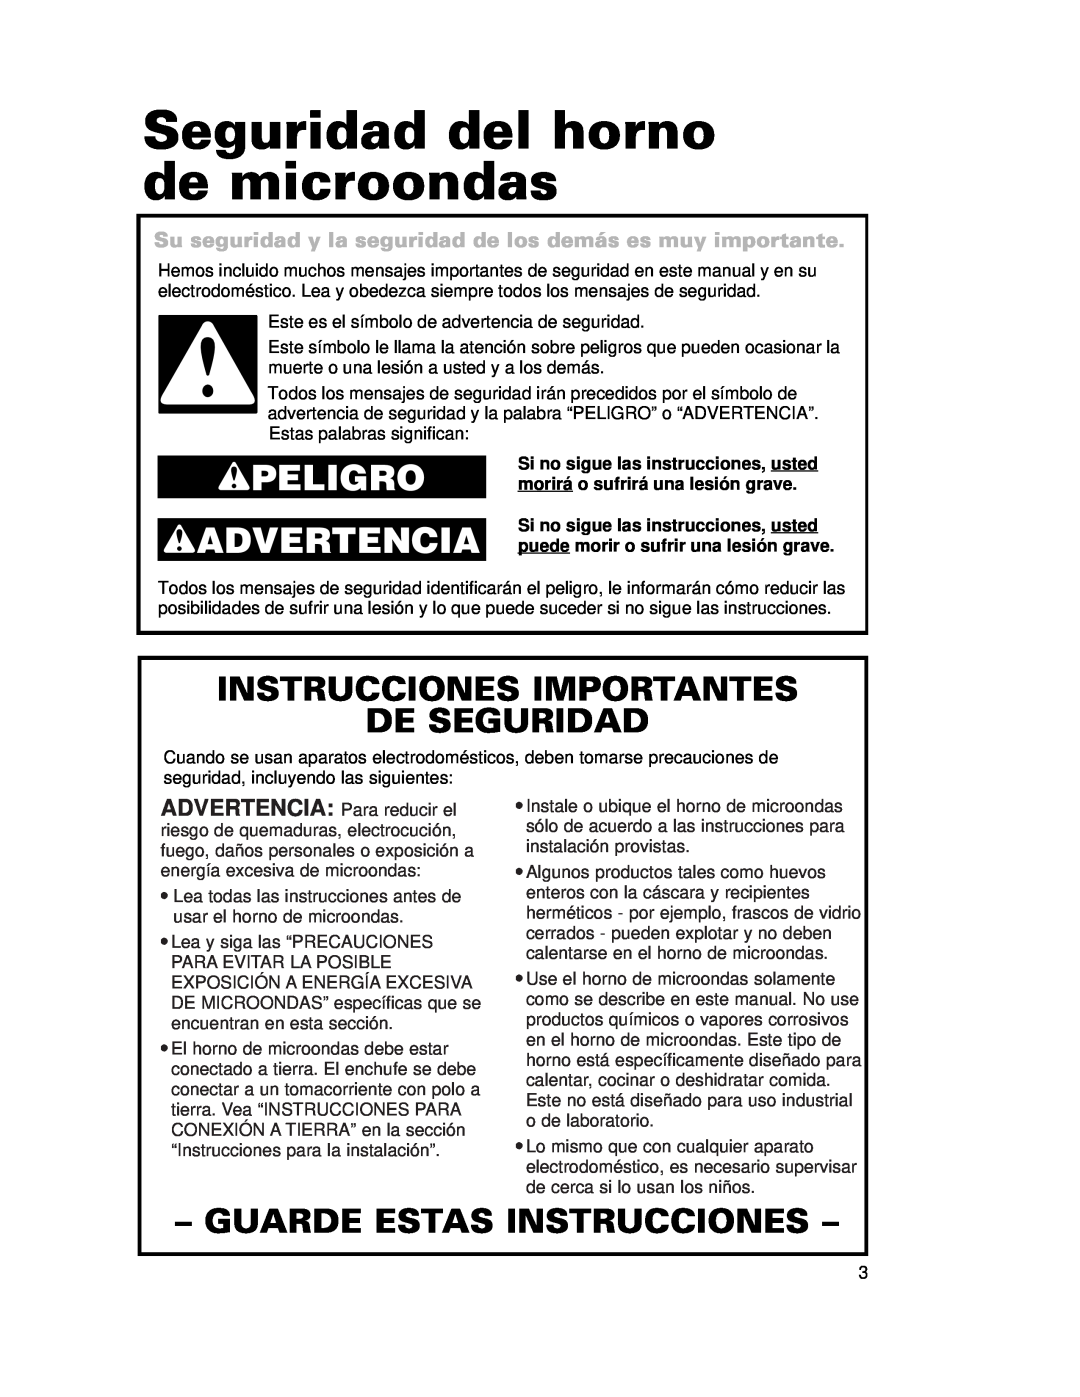 Whirlpool CMT102SG Seguridad del horno de microondas, Peligro Advertencia, Instrucciones Importantes De Seguridad 